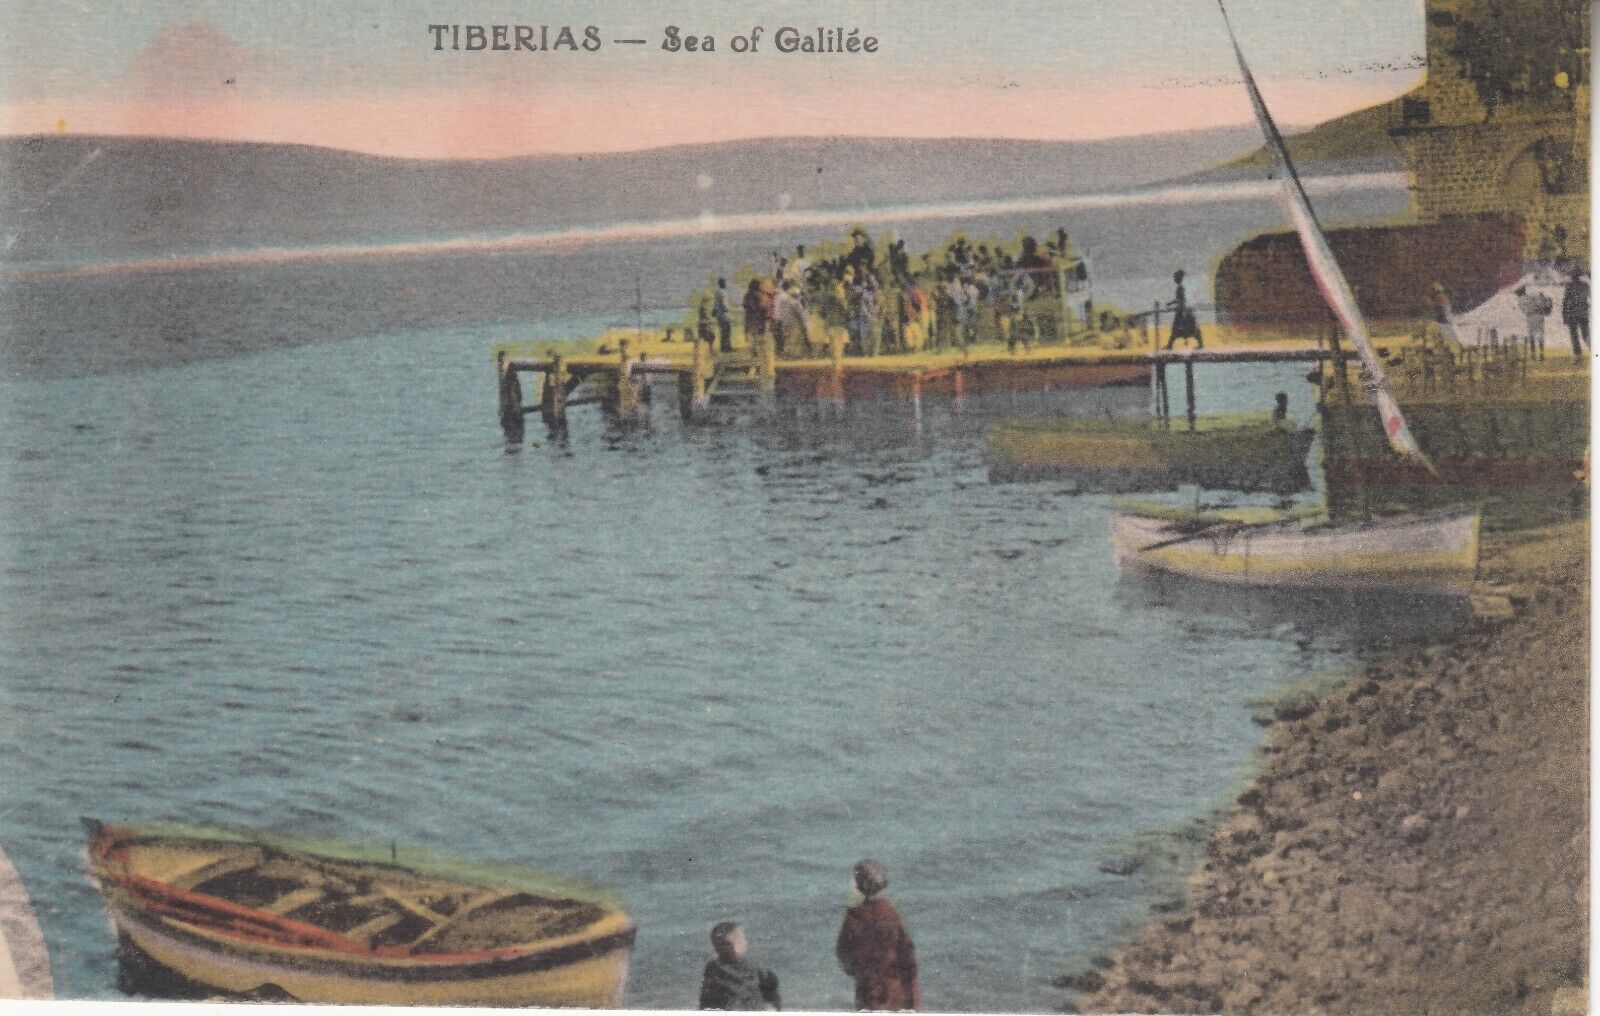 Tiberias - Sea of Galilee. Judaica Palestine Vintage Postcard